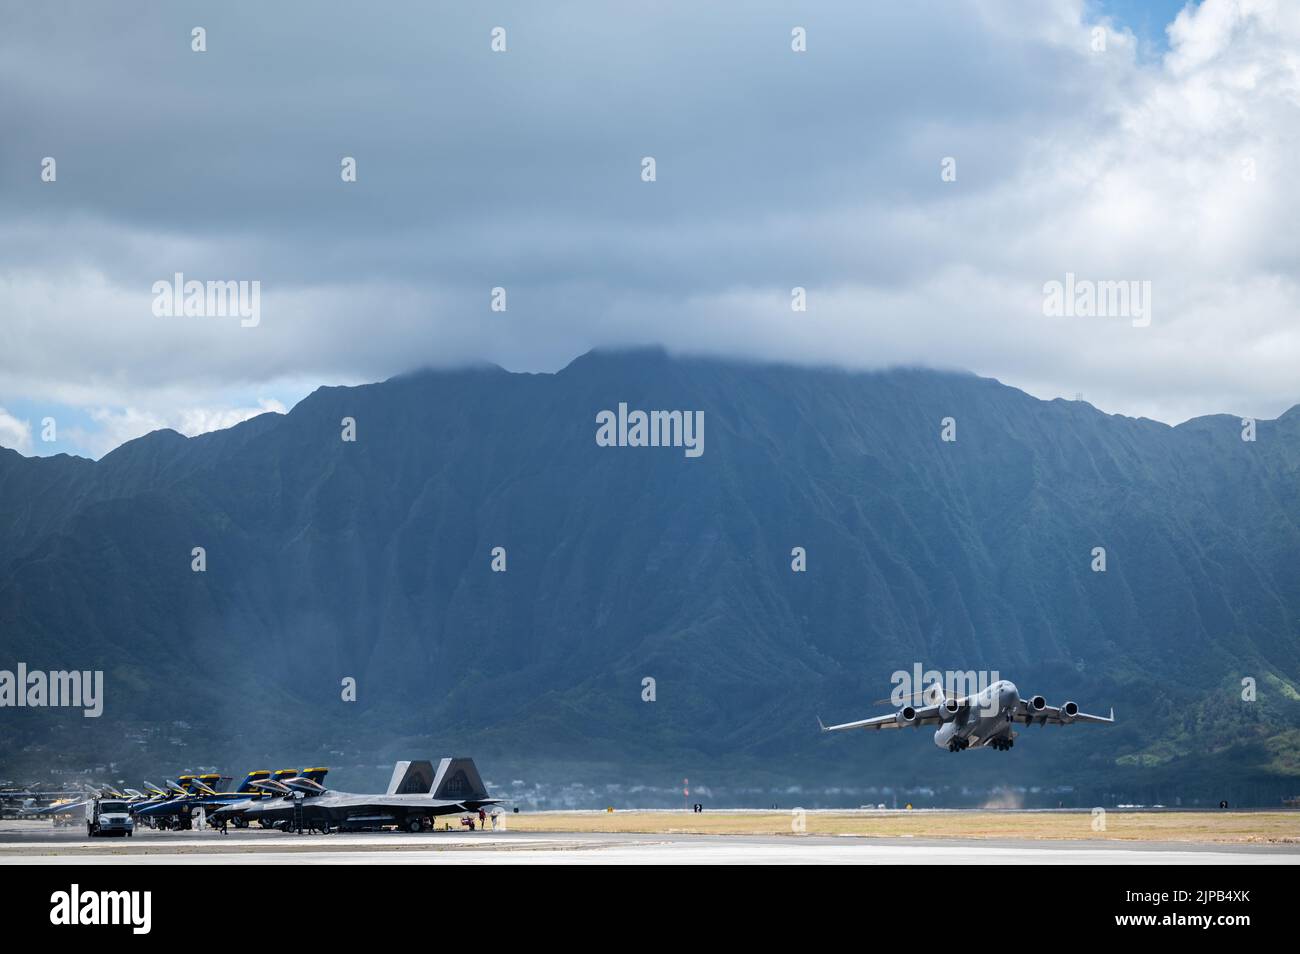 Los F-18 Hornets asignados a los Blue Angels, un Globemaster III C-17 asignado al Escuadrón del Elevador Aéreo 535th y los Raptores F-22 asignados a la Guardia Nacional Aérea de Hawaii participan en el Salón Aéreo de la Bahía de Kaneohe en la Base del Cuerpo de Infantería de Marina de Hawaii, Hawaii, el 12 de agosto de 2022. El evento de tres días contó con actuaciones de varias tripulaciones aéreas militares, demostrando las operaciones y capacidades de los aviones. (EE. UU Foto de la Fuerza Aérea por el Staff Sgt. Alan Ricker) Foto de stock